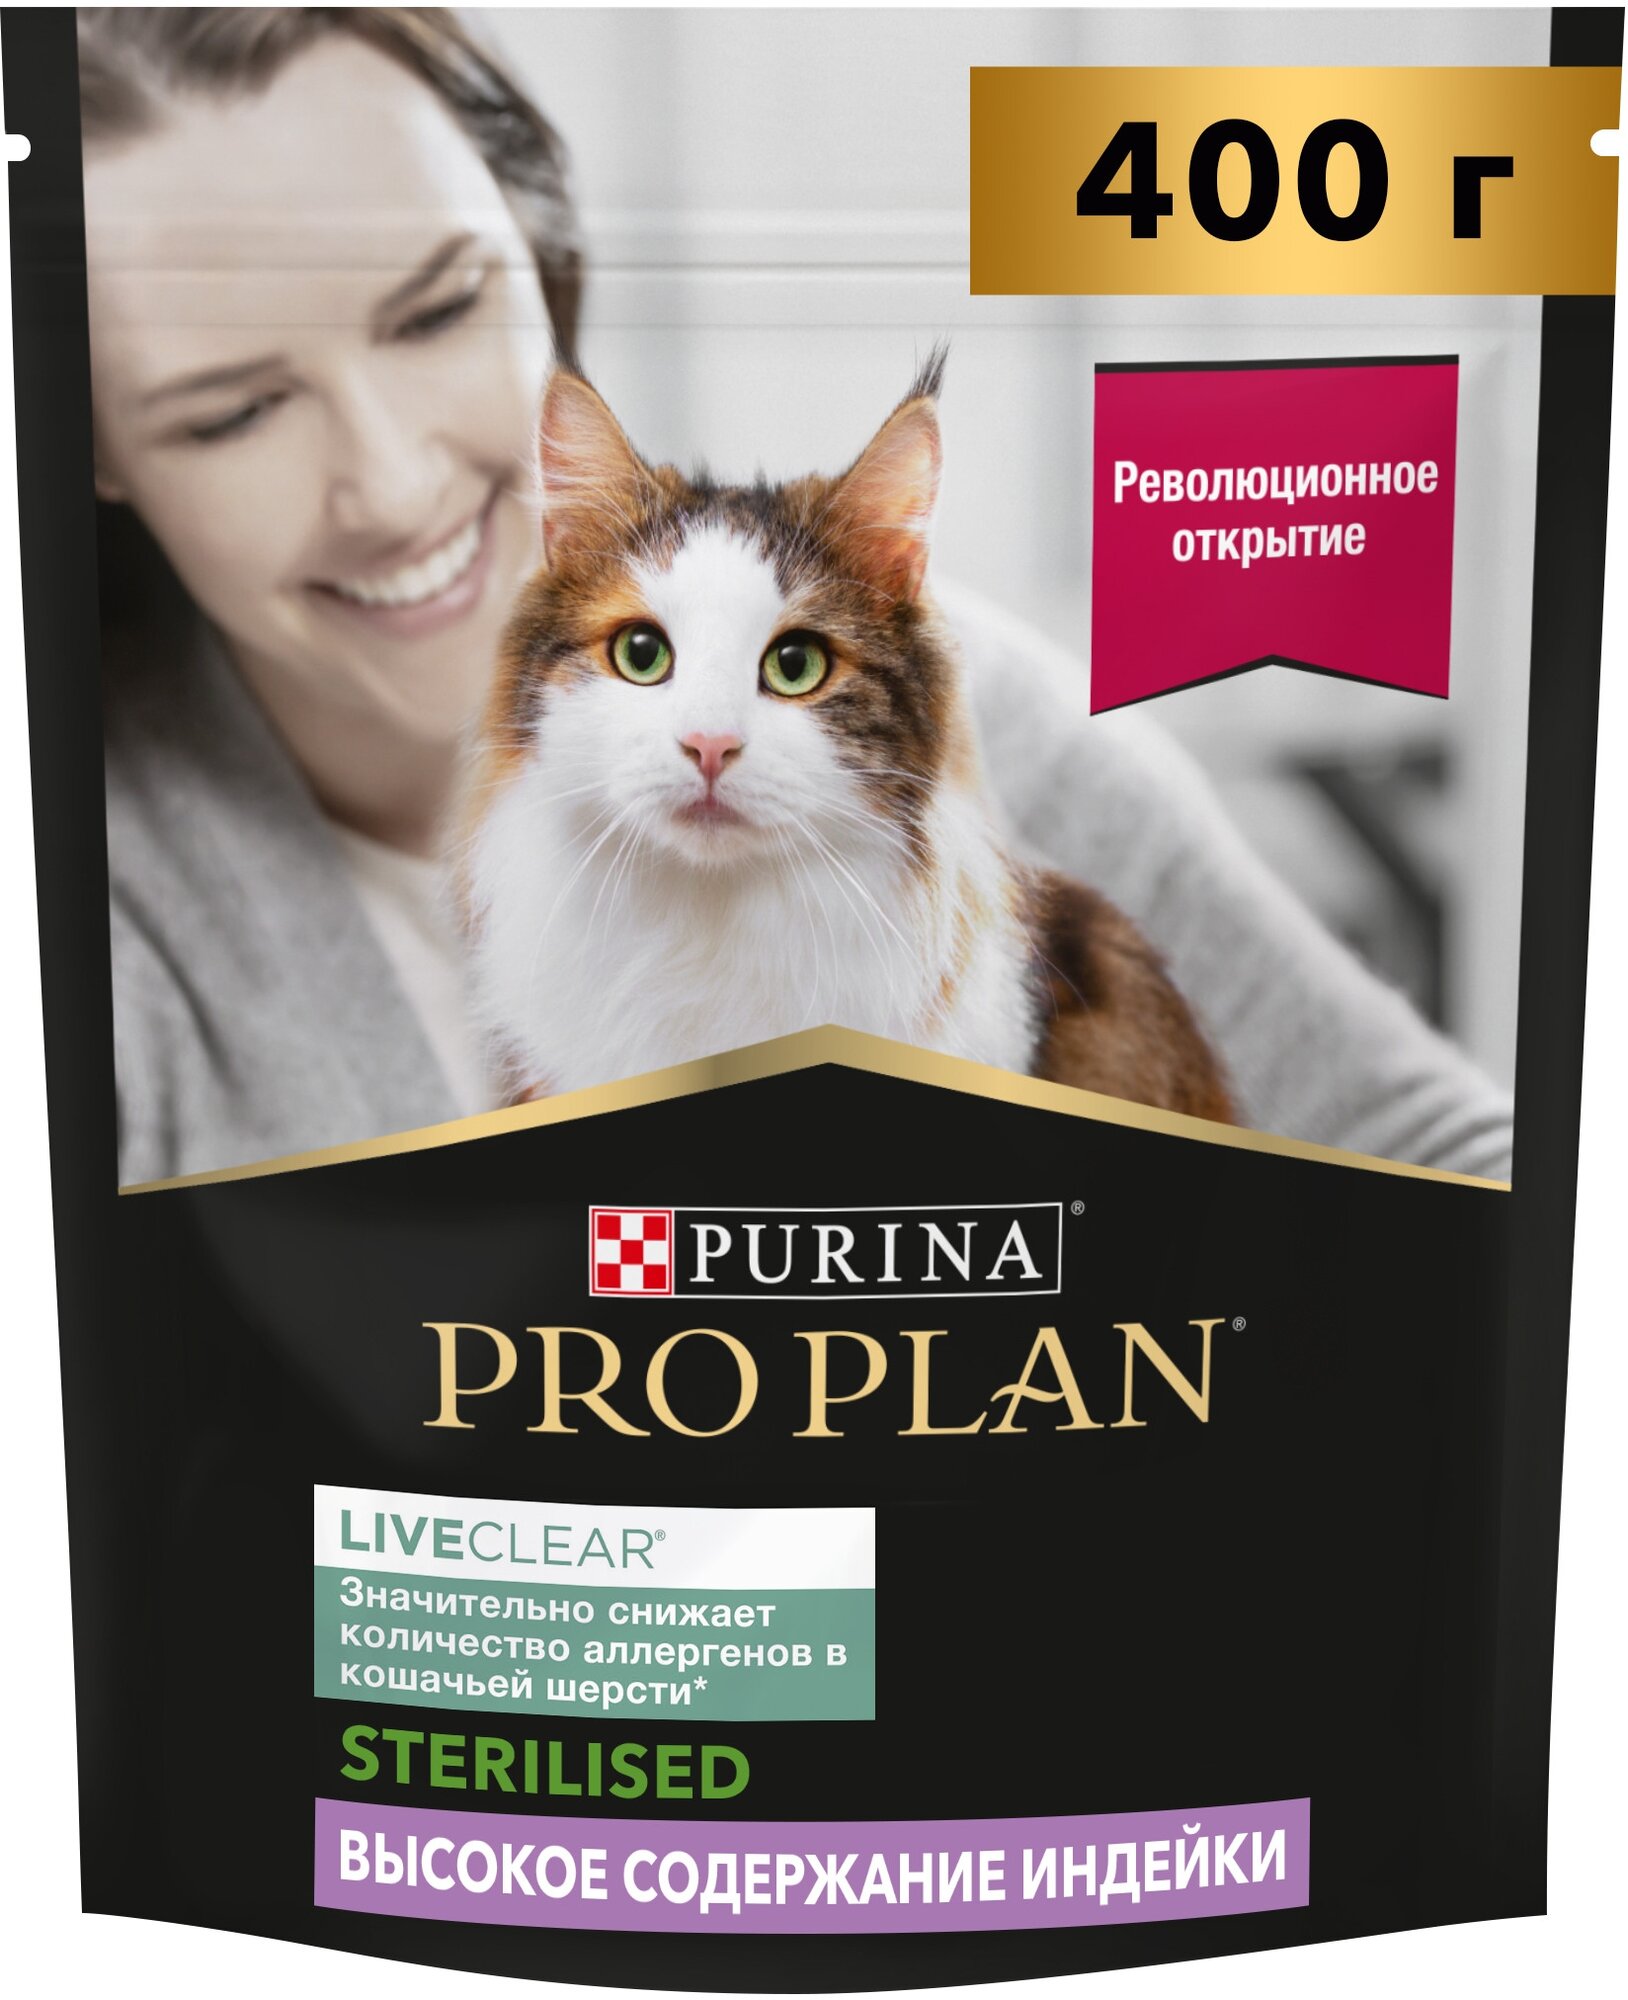 Сухой корм для кошек PRO PLAN LiveClear Sterilised для снижения количество аллергенов в шерсти, с индейкой 400 г